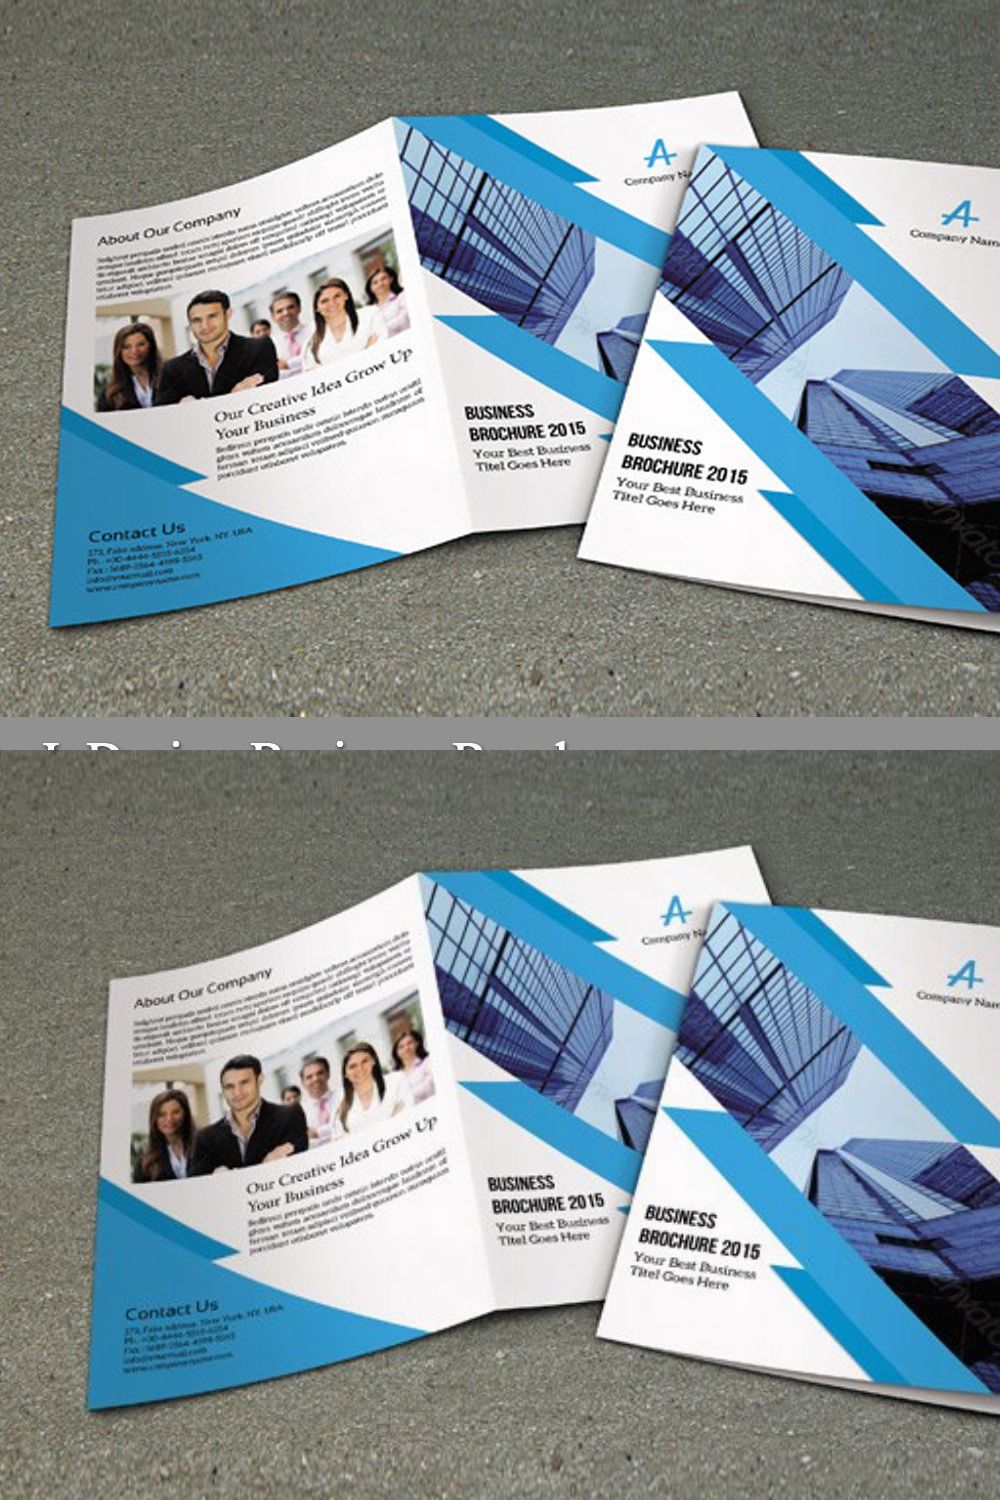 InDesign Business Brochure-V154 pinterest preview image.